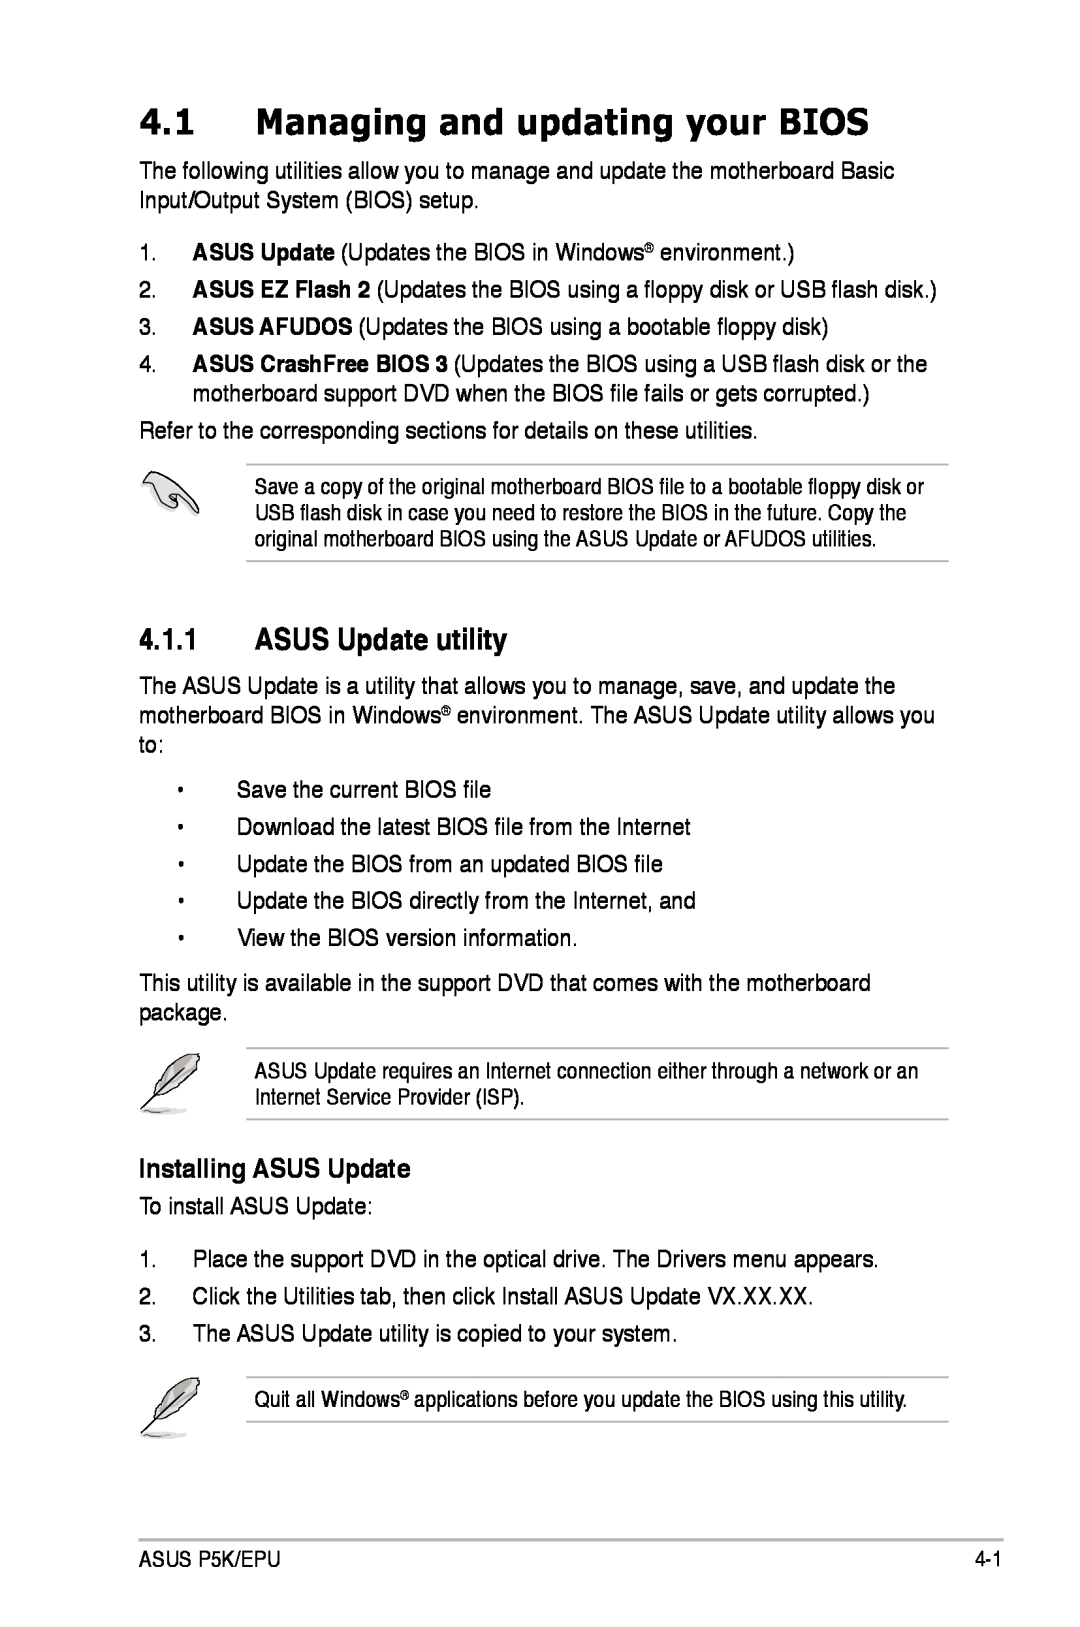 Asus P5K/EPU manual Managing and updating your BIOS, ASUS Update utility, Installing ASUS Update 